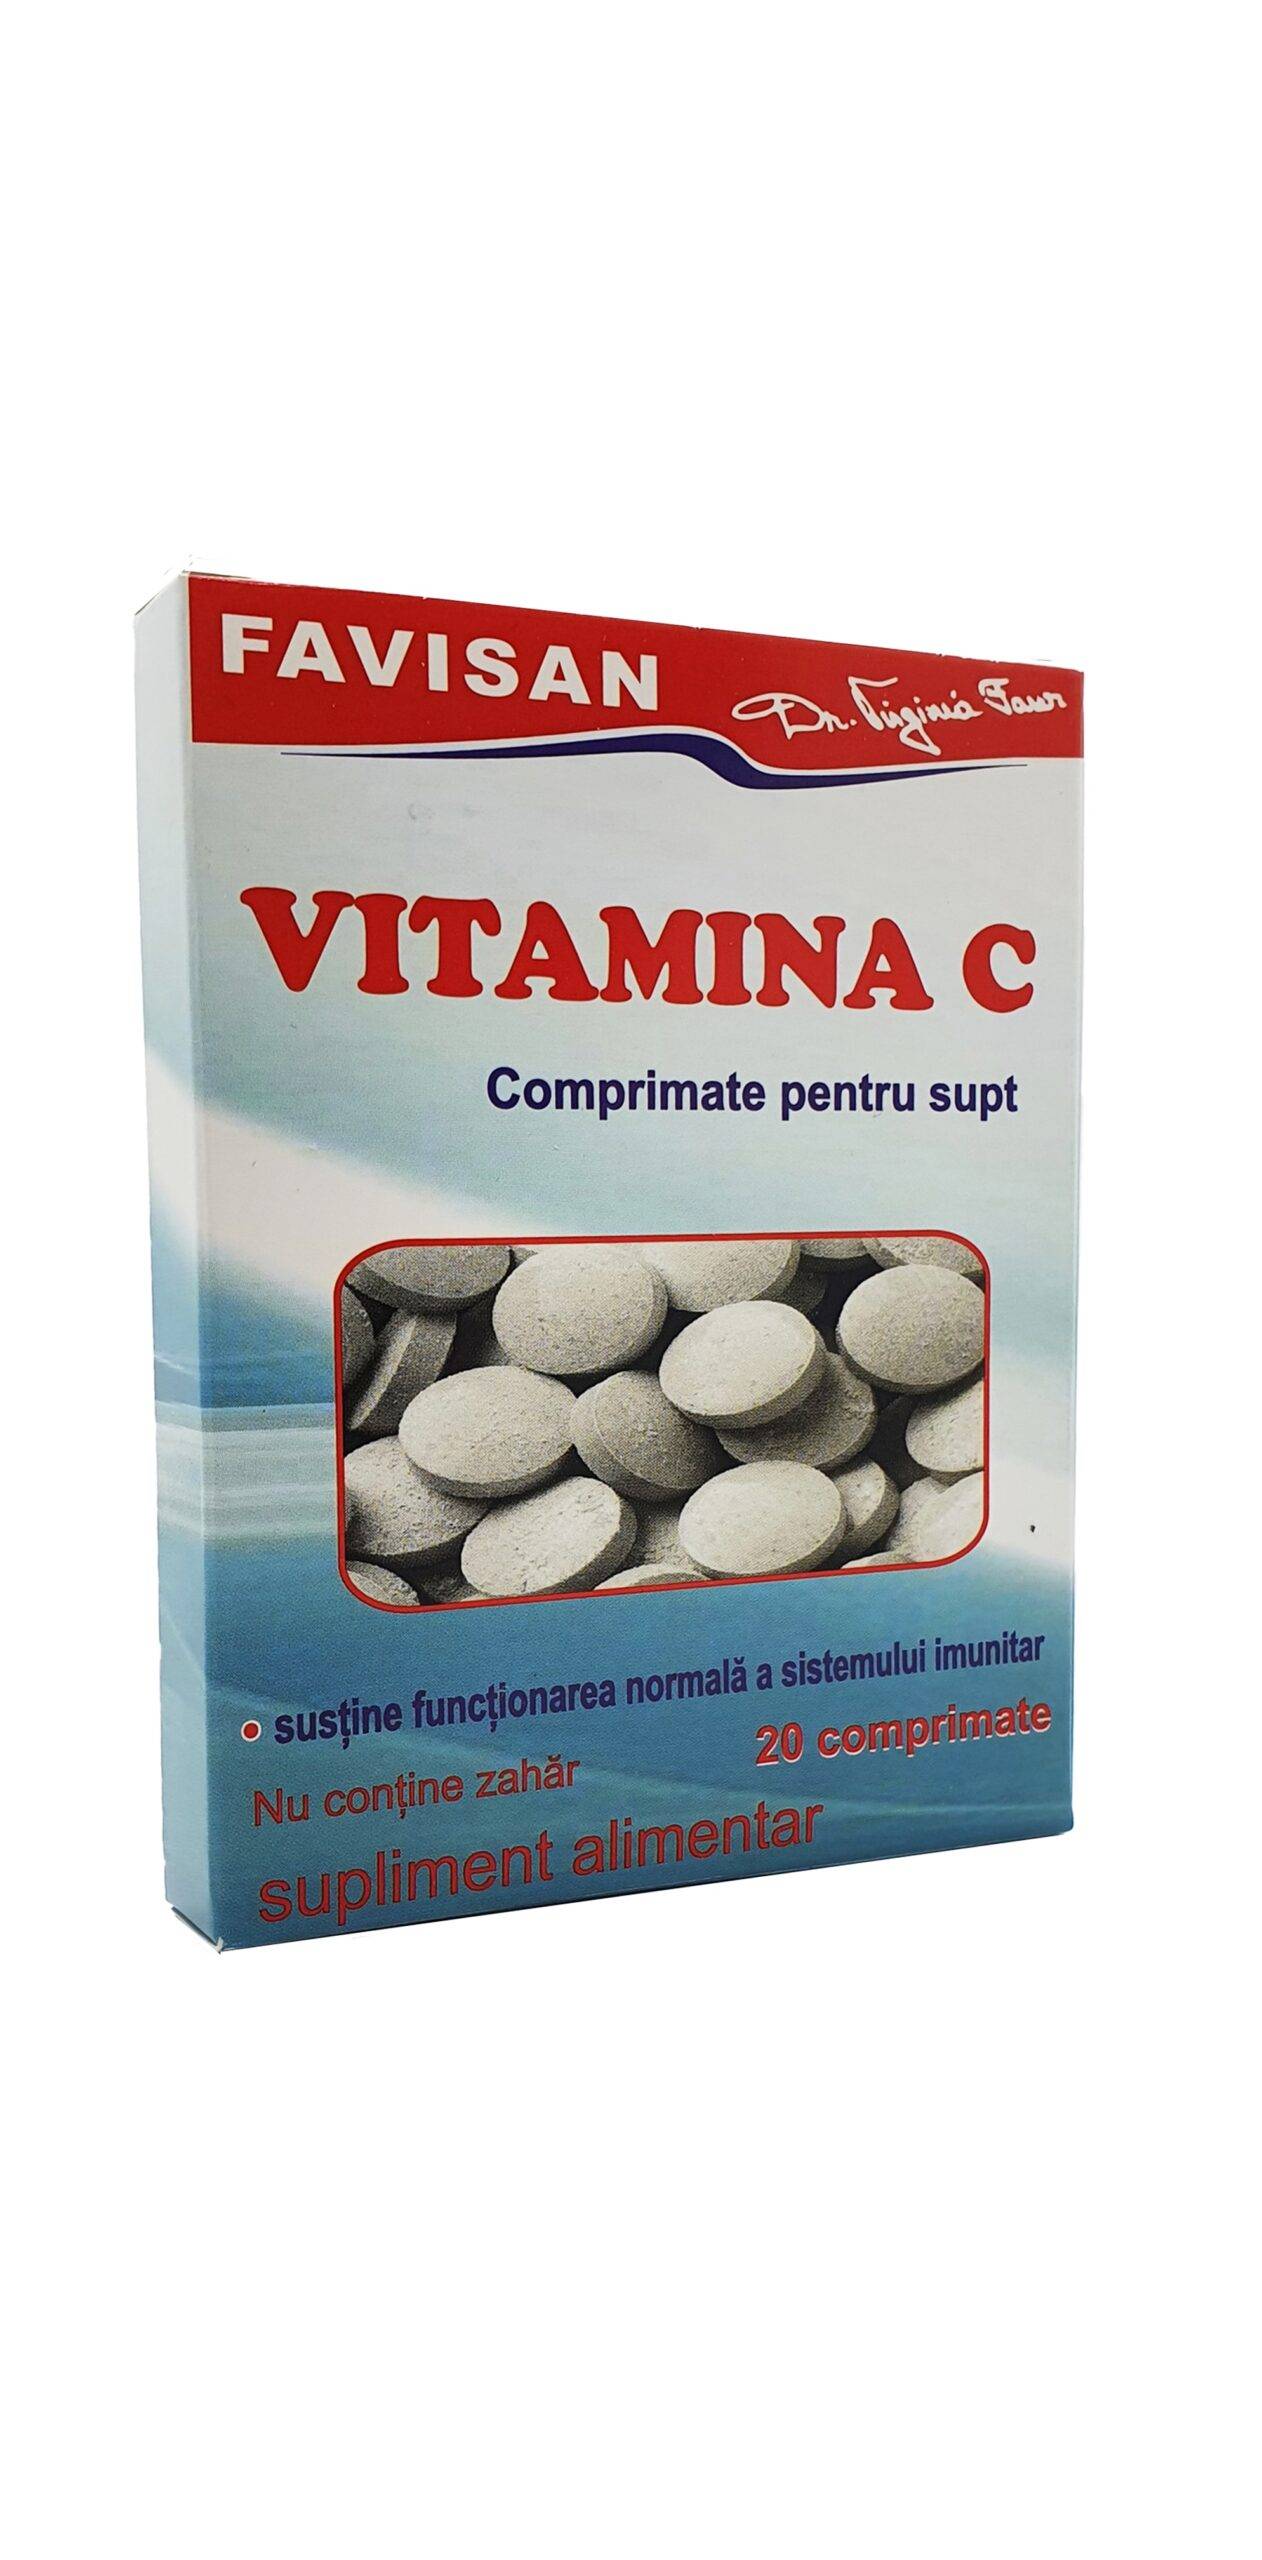 Vitamina C, Comprimate Pentru Supt, 20 Comprimate, Favisan